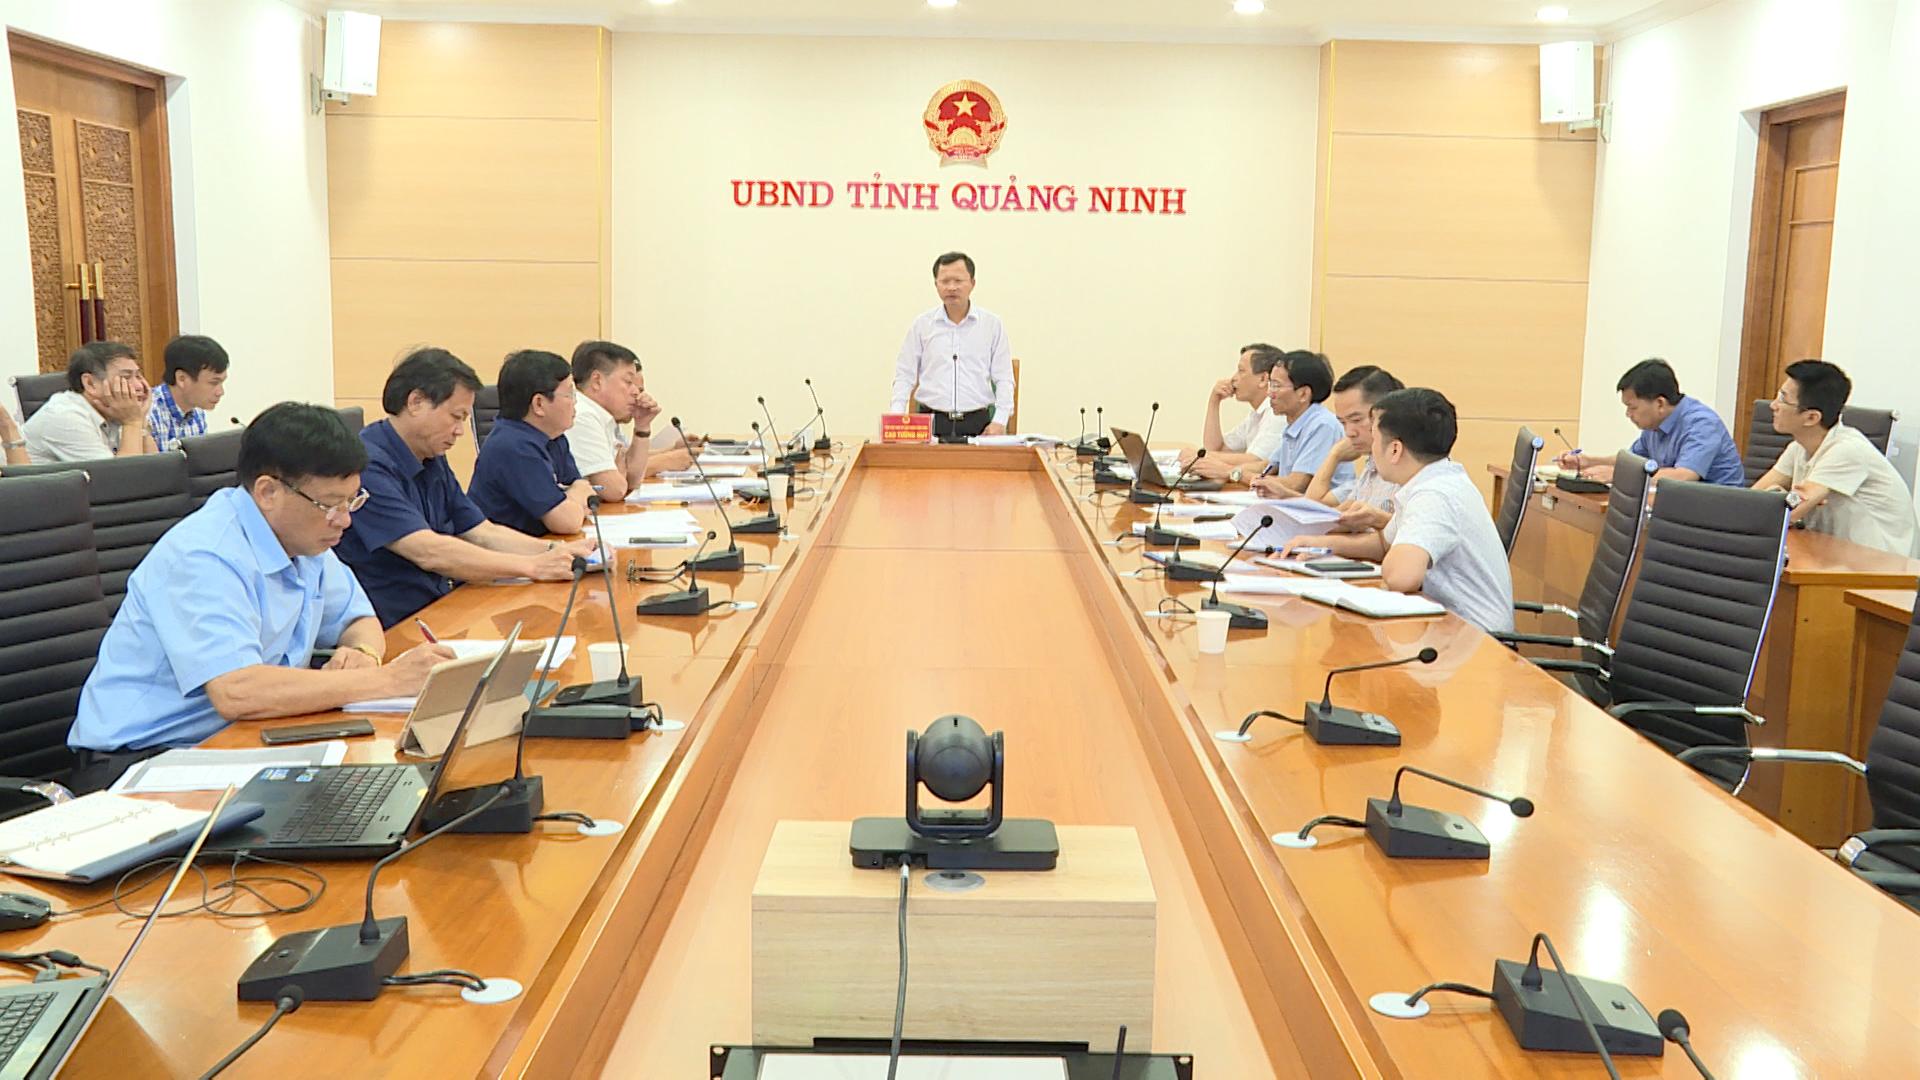 Đồng chí Cao Tường Huy, Phó Chủ tịch UBND tỉnh kết luận tại cuộc họp.